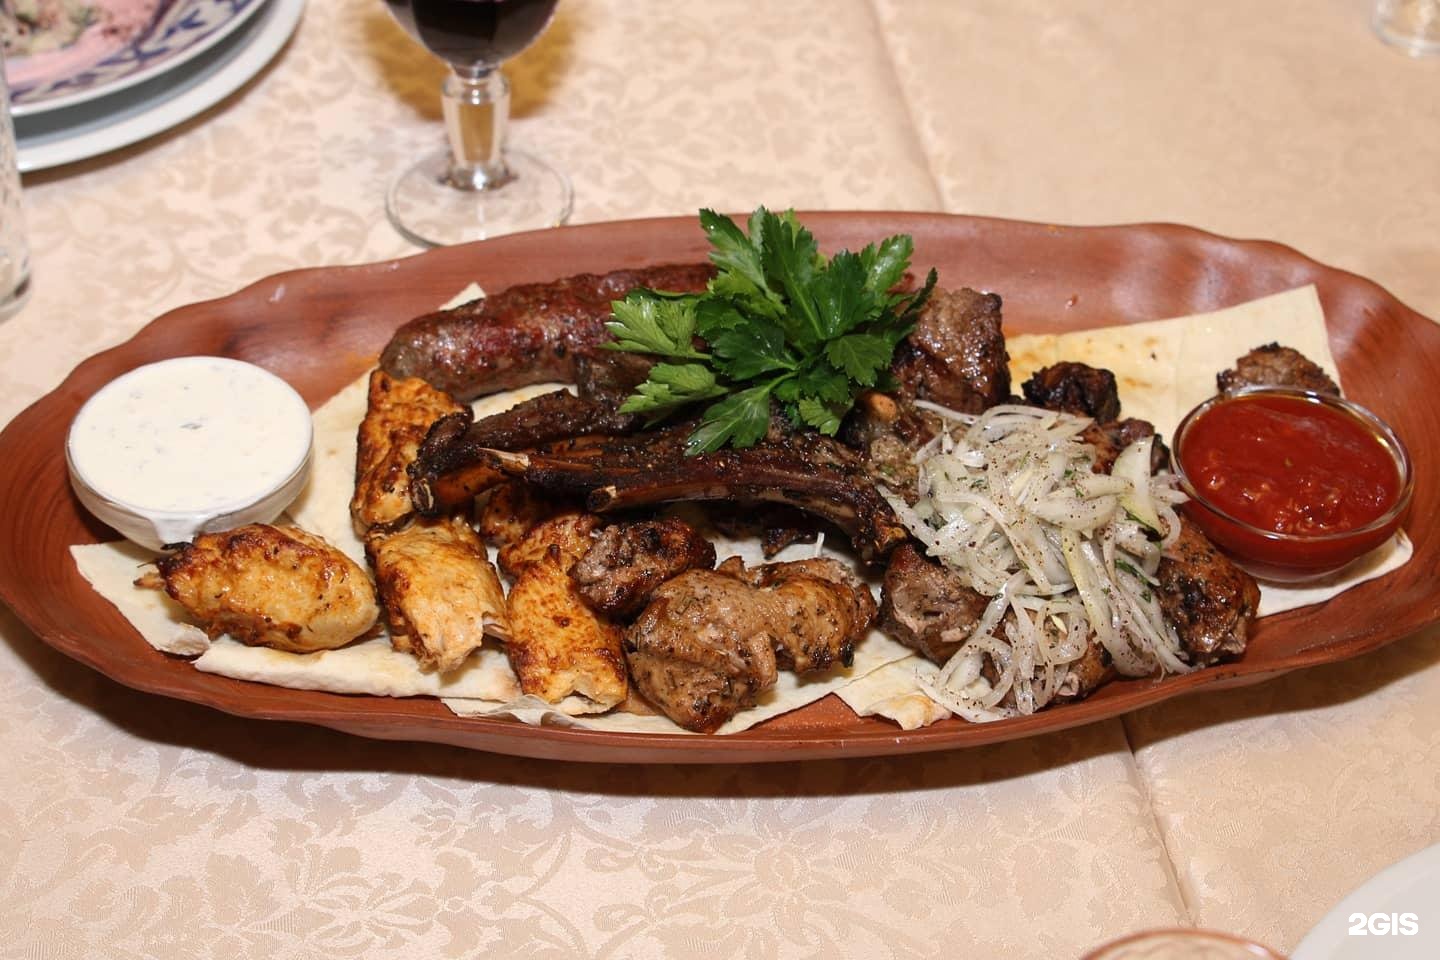 Сайт кавказского ресторана